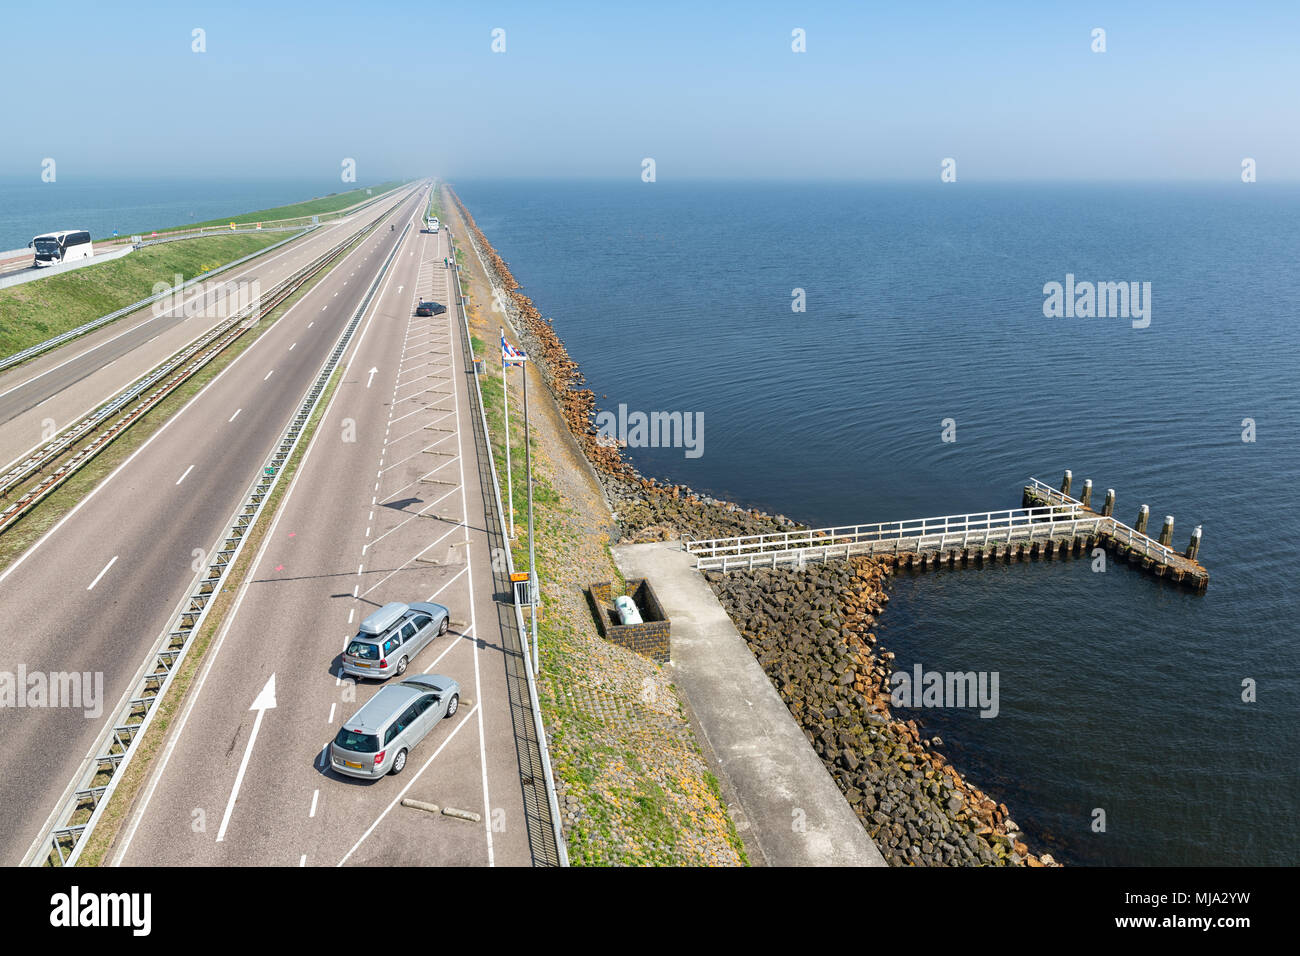 L'autoroute néerlandaise à l'afsluitdijk. La digue est la connexion entre la Frise et Noord-Holland et sépare la mer de Wadden de l'IJsselmeer Banque D'Images